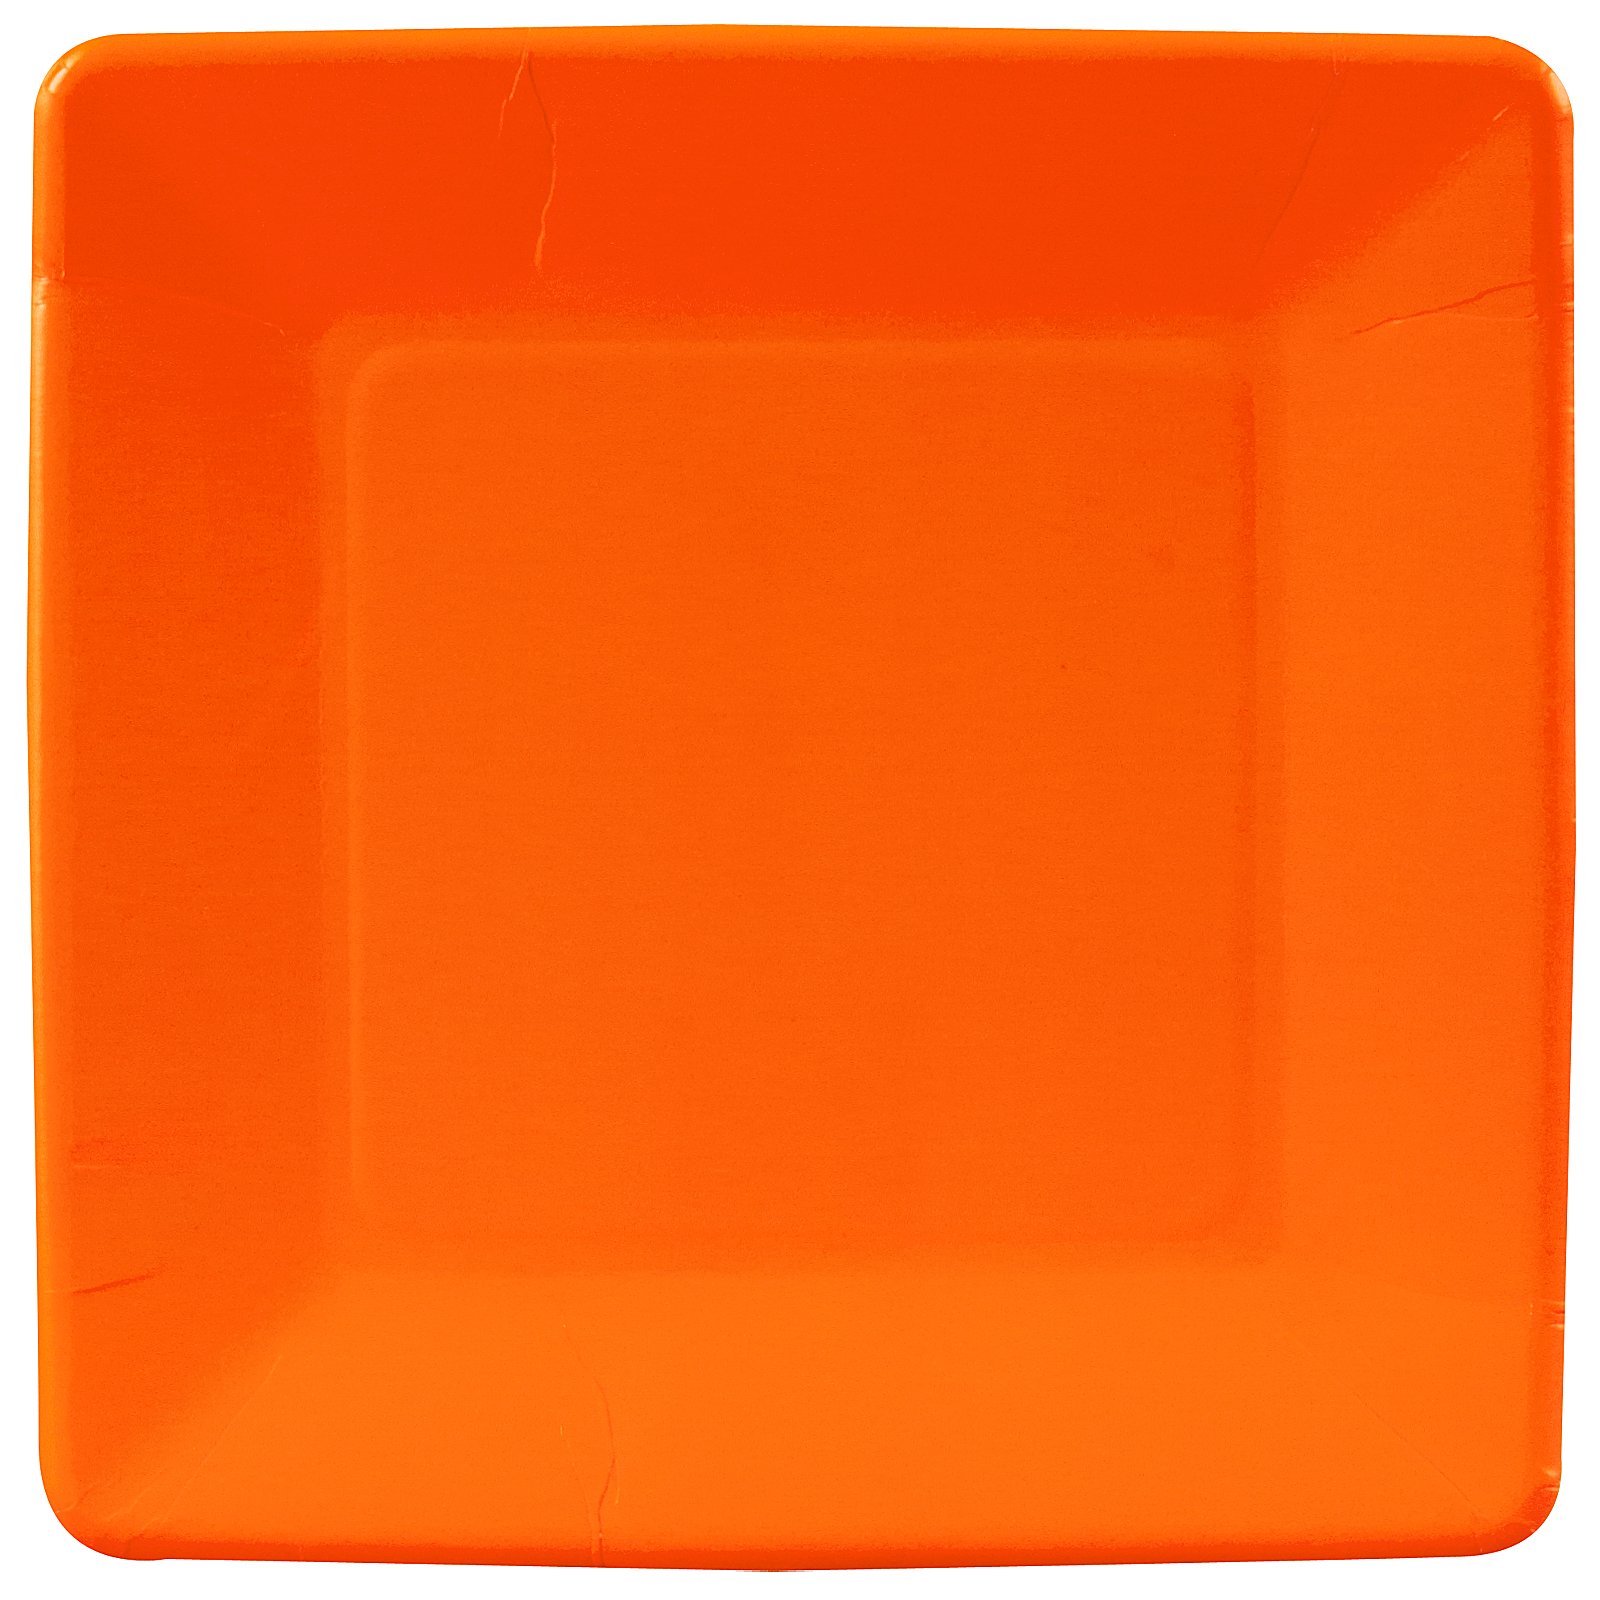 Sunkissed Orange (Orange) Square Dinner Plates (18 count)